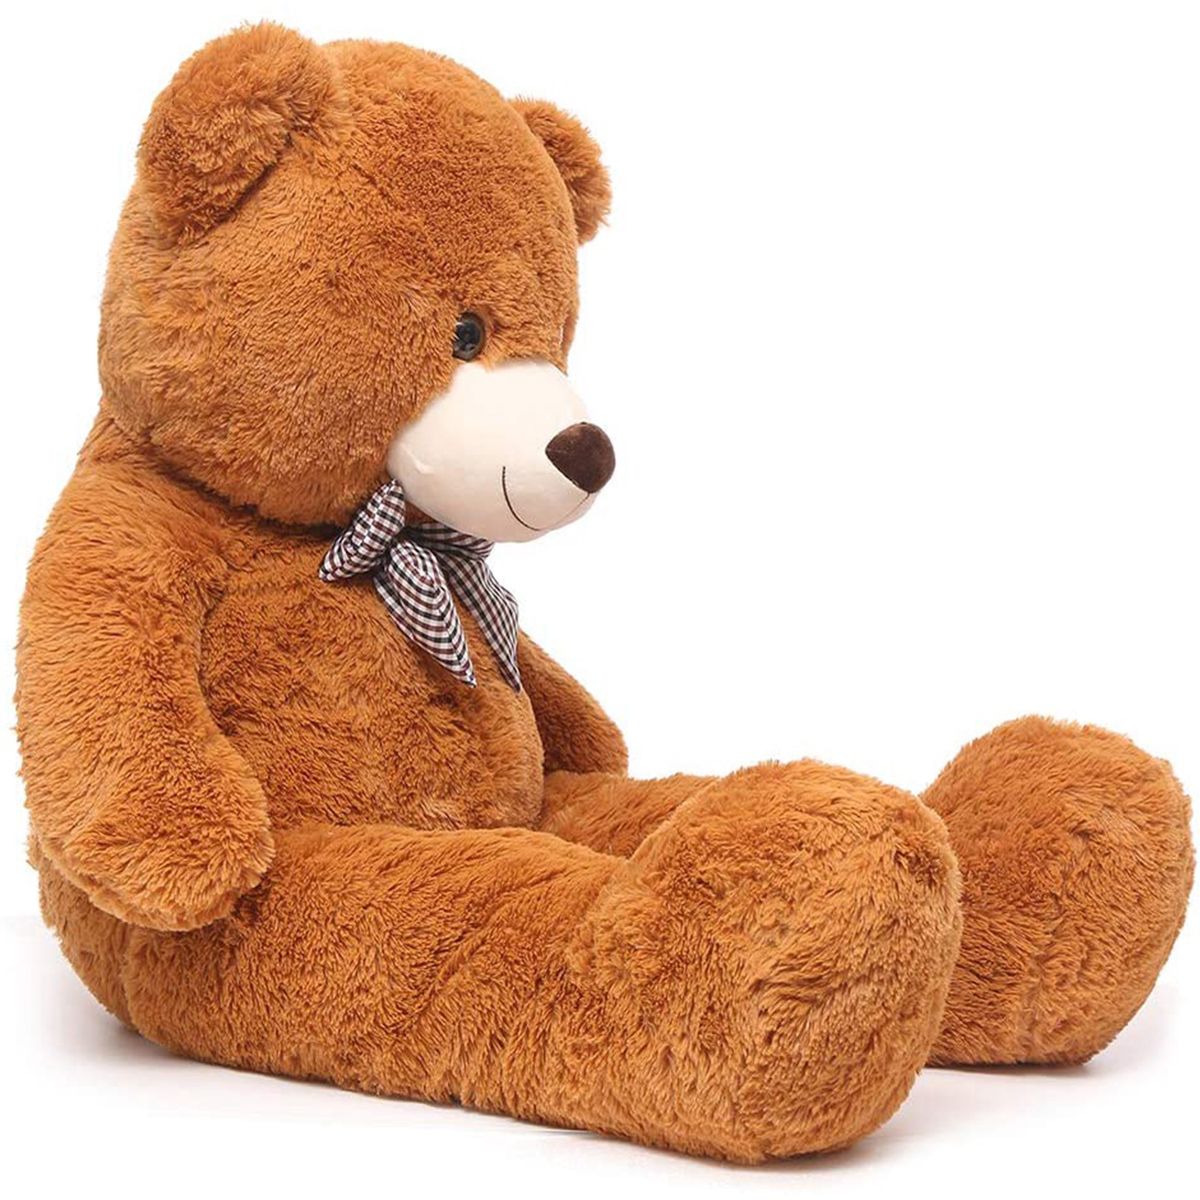 Big Cuddly Plush Stuffed Teddy Bear - 120 cm, Shop Today. Get it Tomorrow!